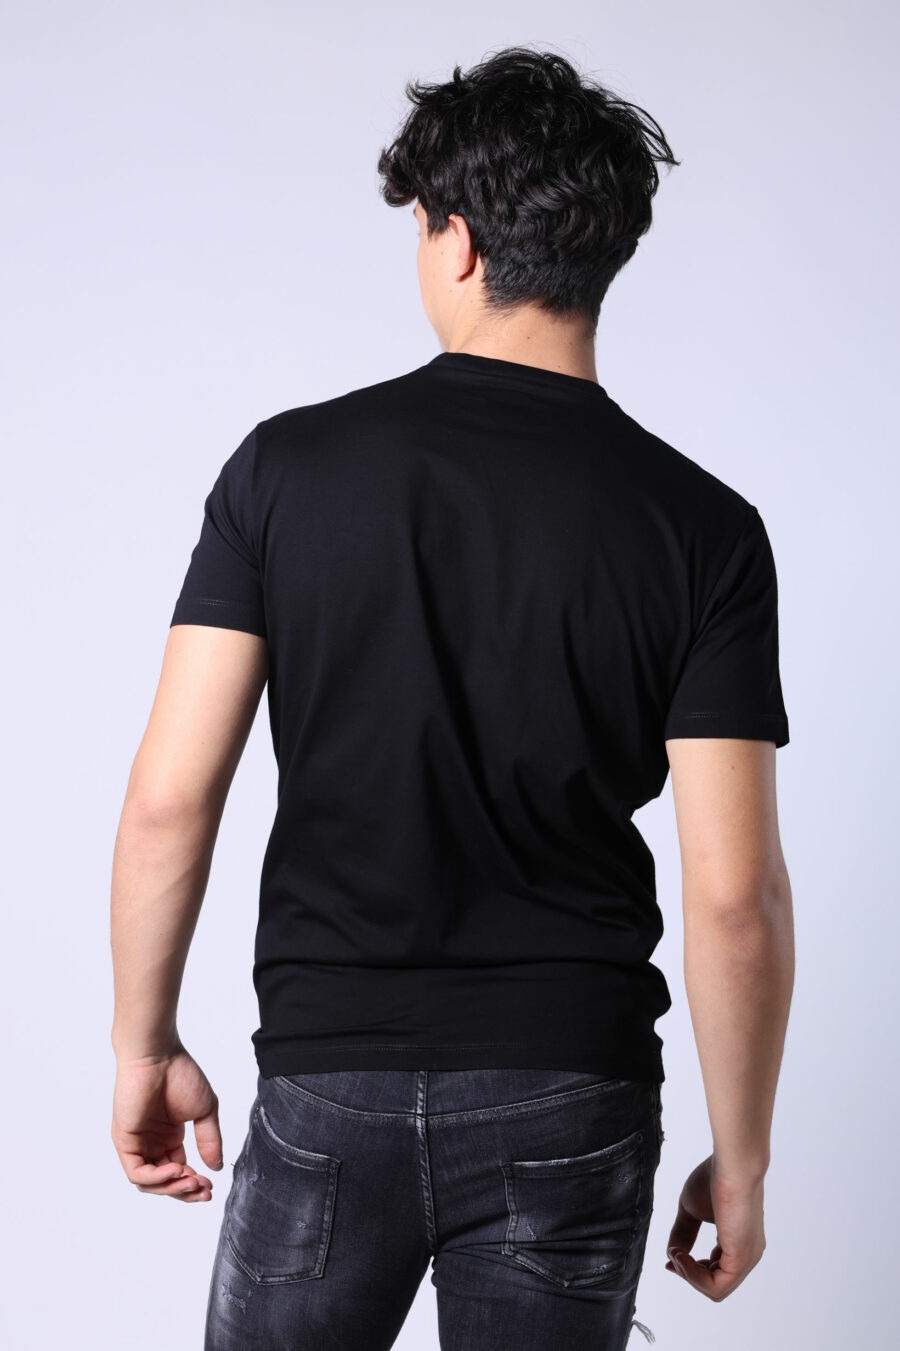 Camiseta negra con logo ceresio 9 - Untitled Catalog 05330